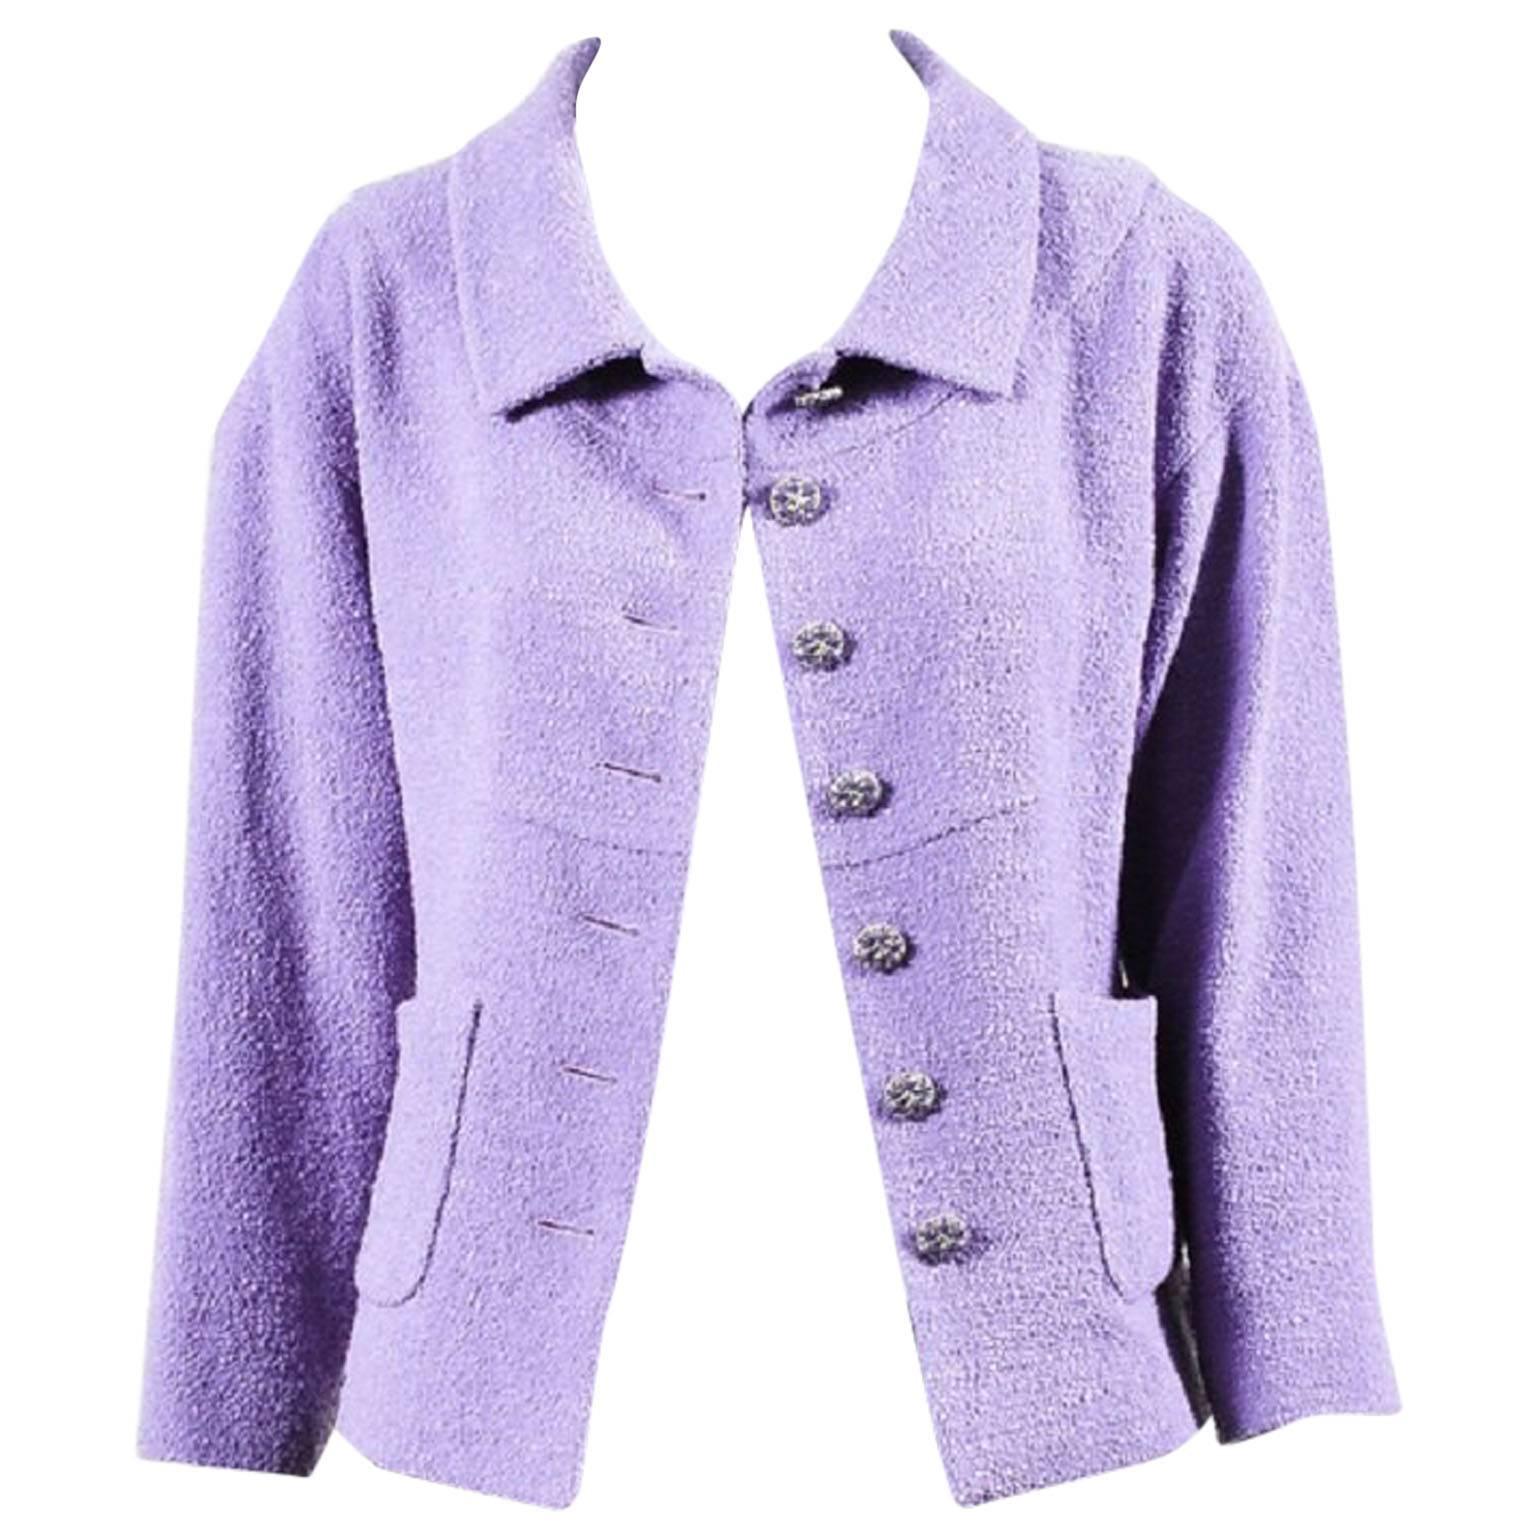 Chanel $4535 Lavender Purple Wool Boucle 'CC' Cabochon Button Jacket SZ 40 For Sale